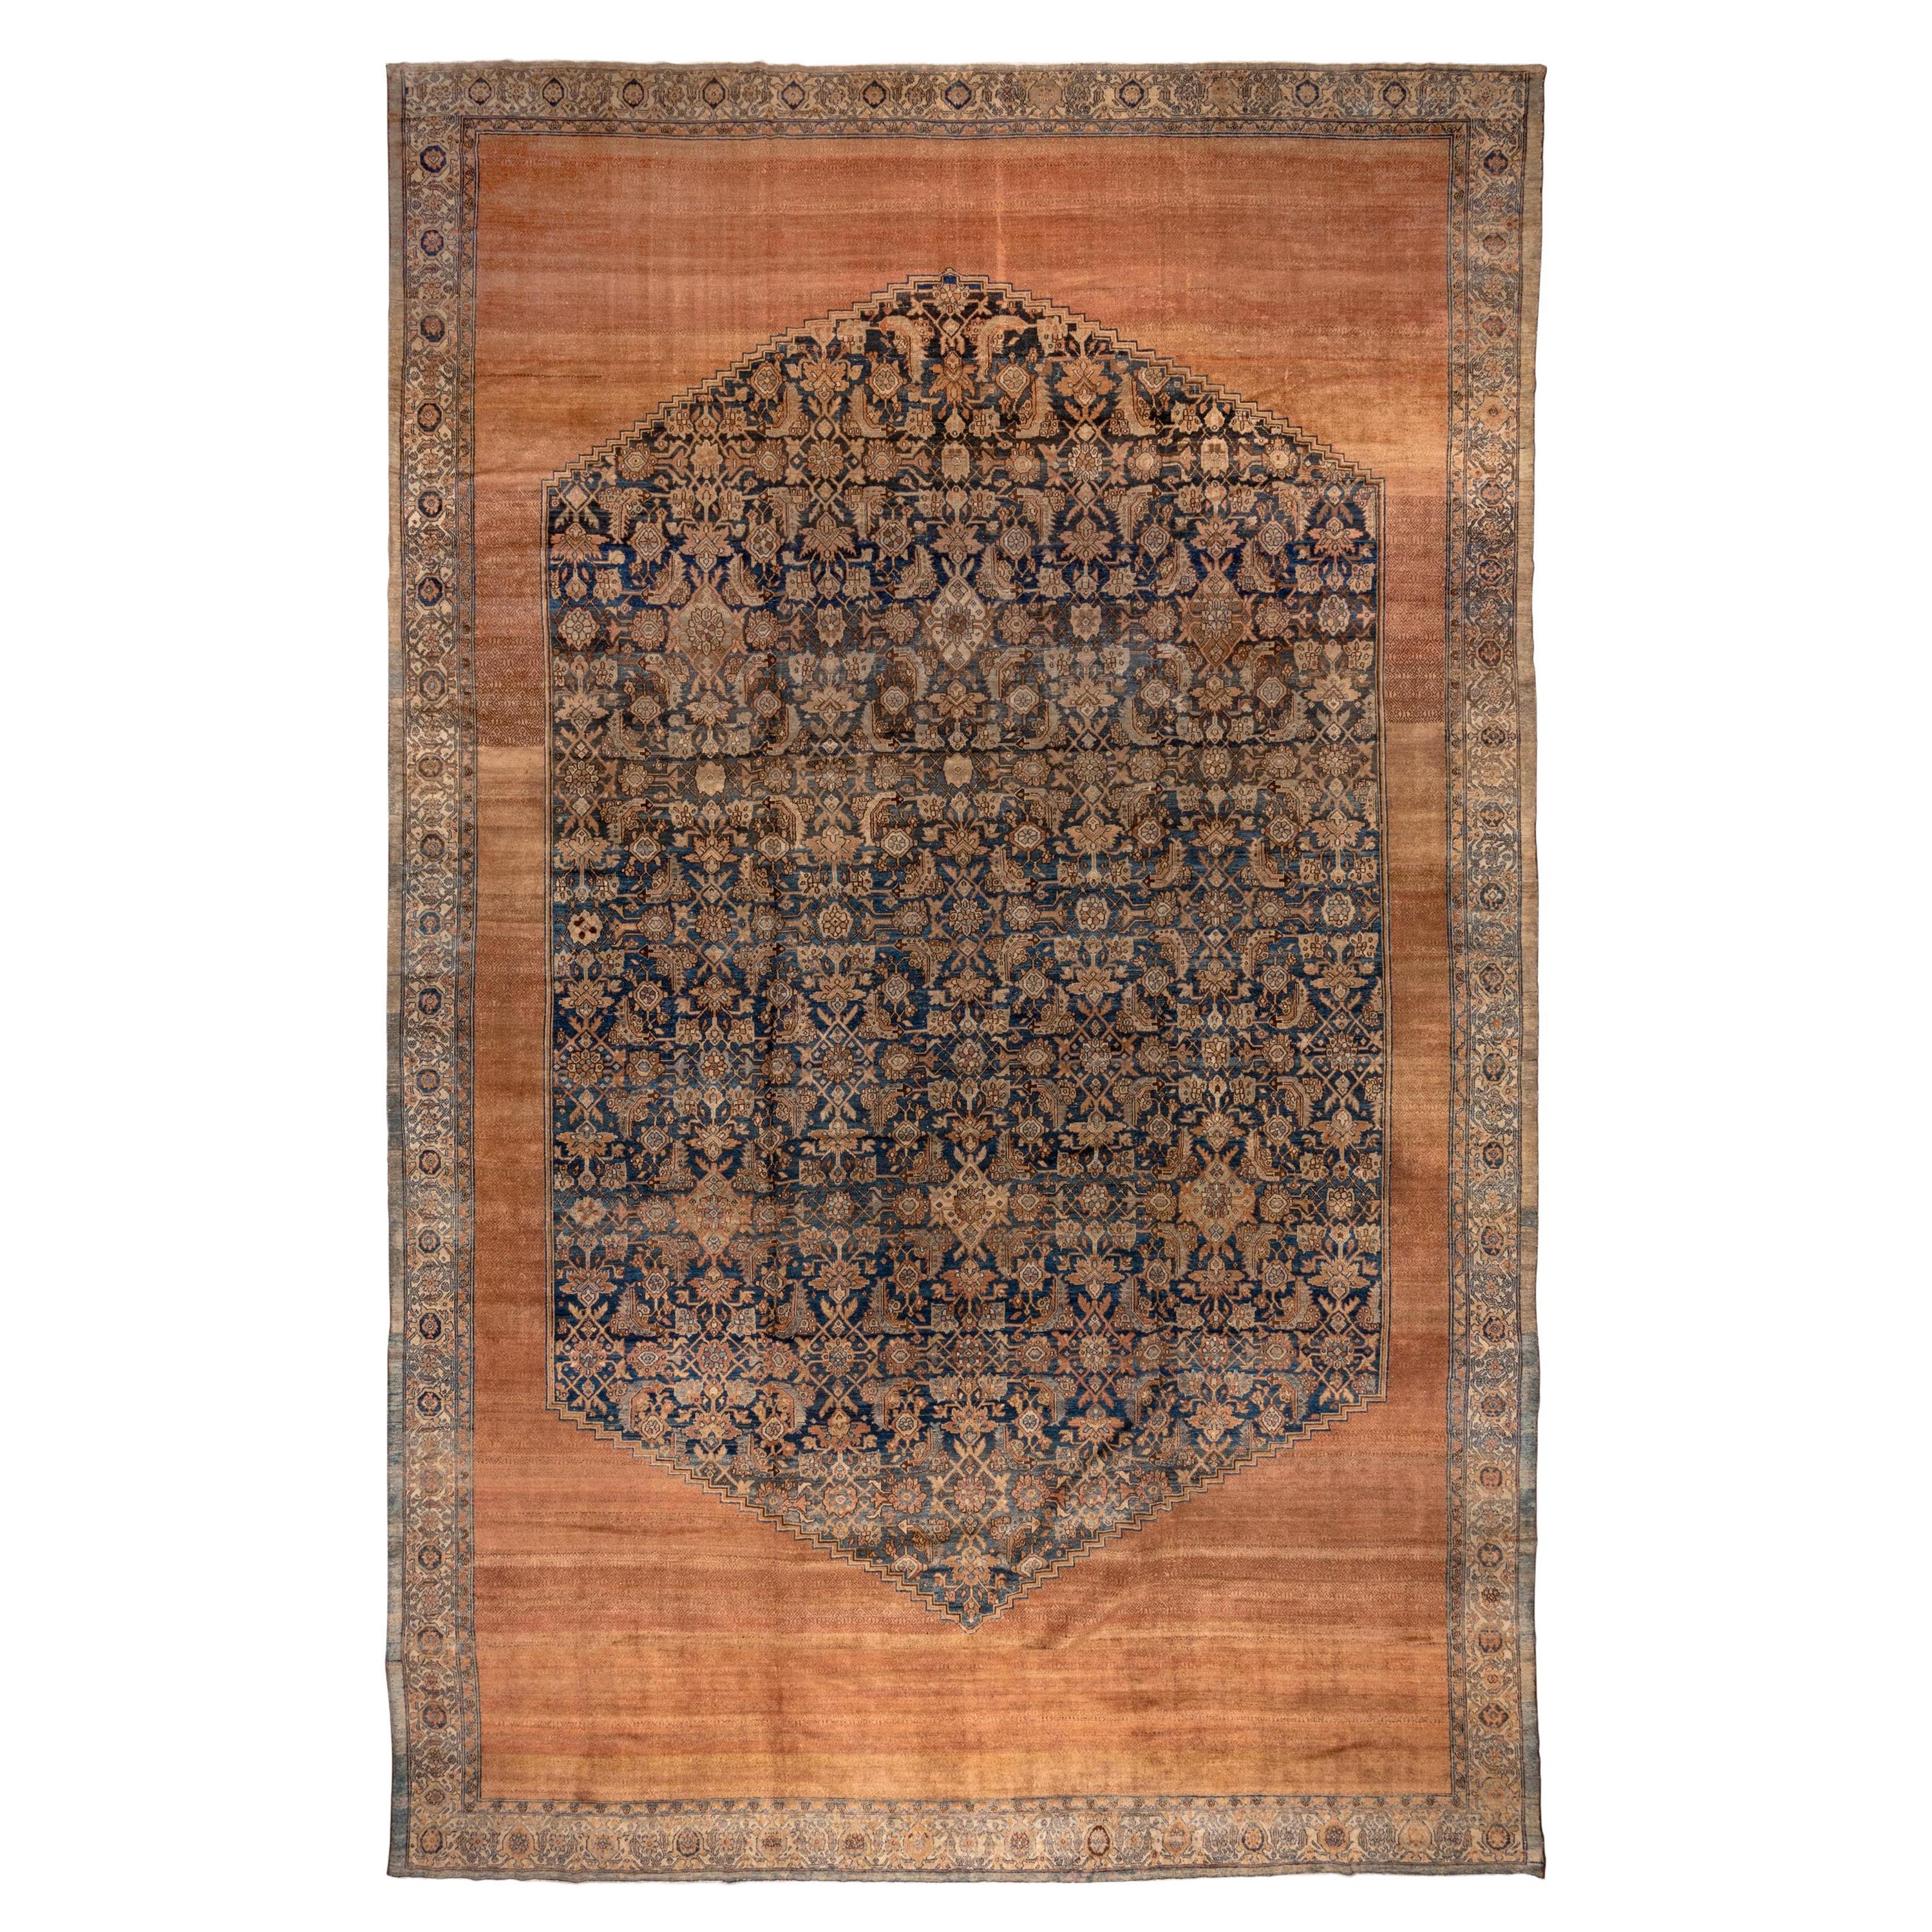 Antique Persian Bibikabad Carpet, circa 1900s